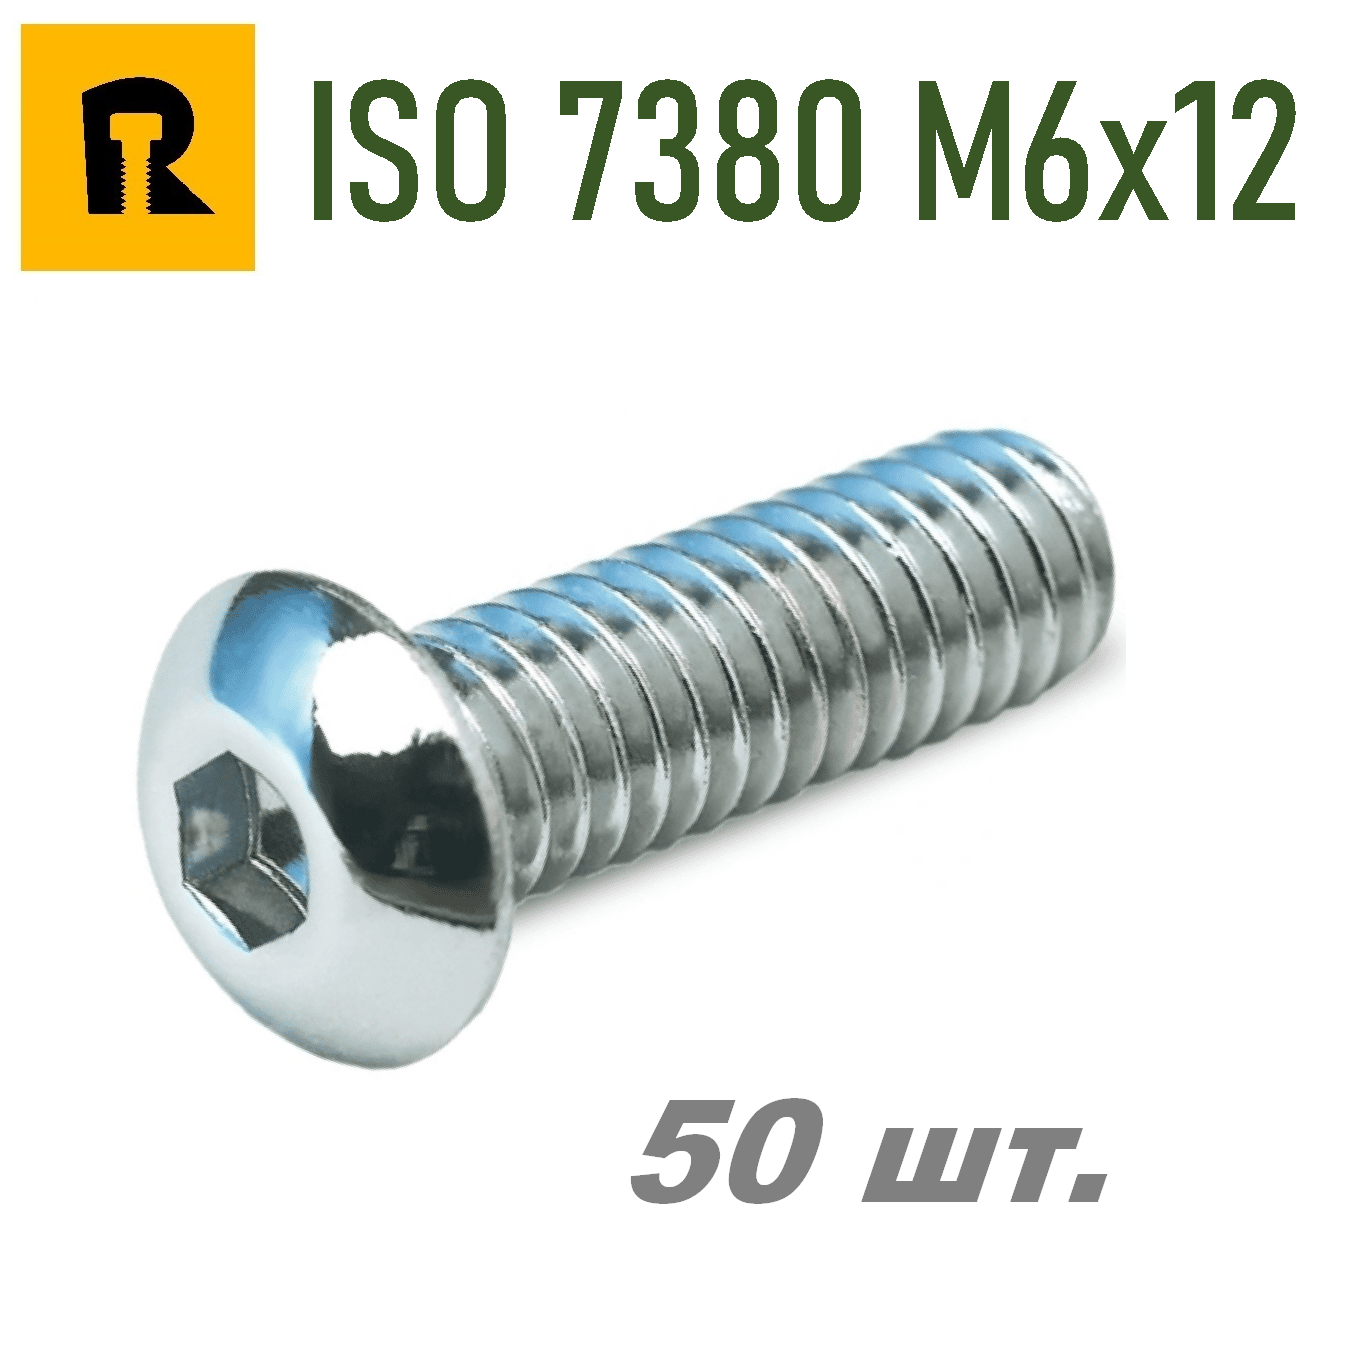 Винт ISO 7380 M6x12 s4 кп 10.9 50 шт.